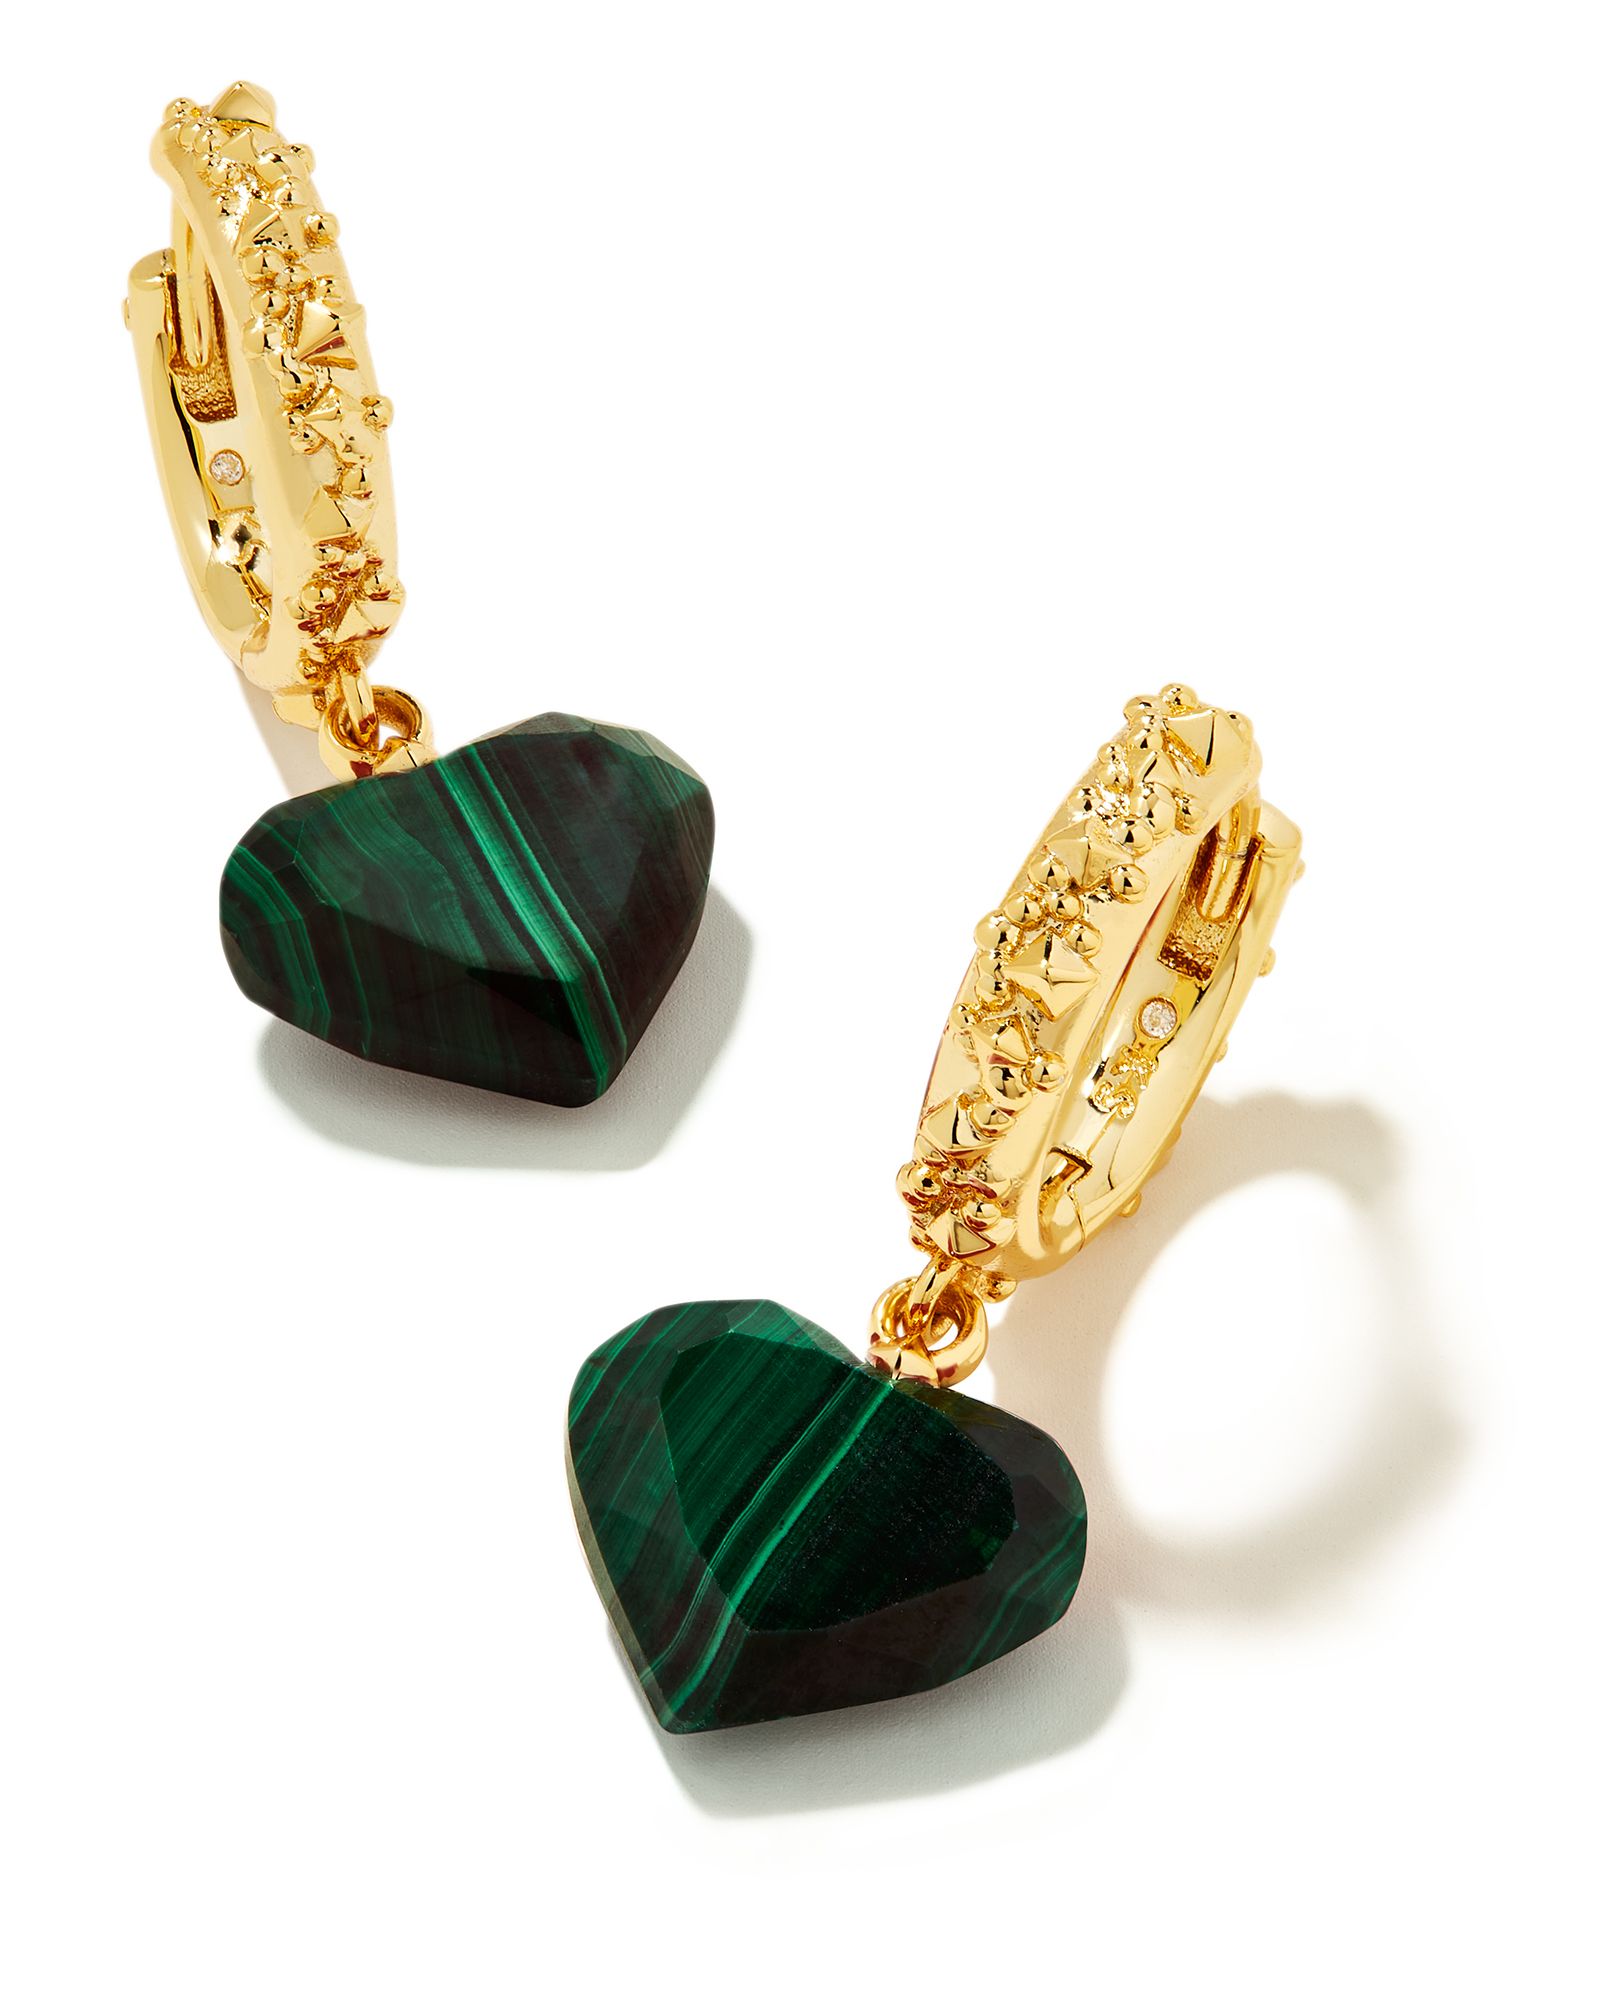 Penny Gold Heart Huggie Earrings in Green Malachite | Kendra Scott